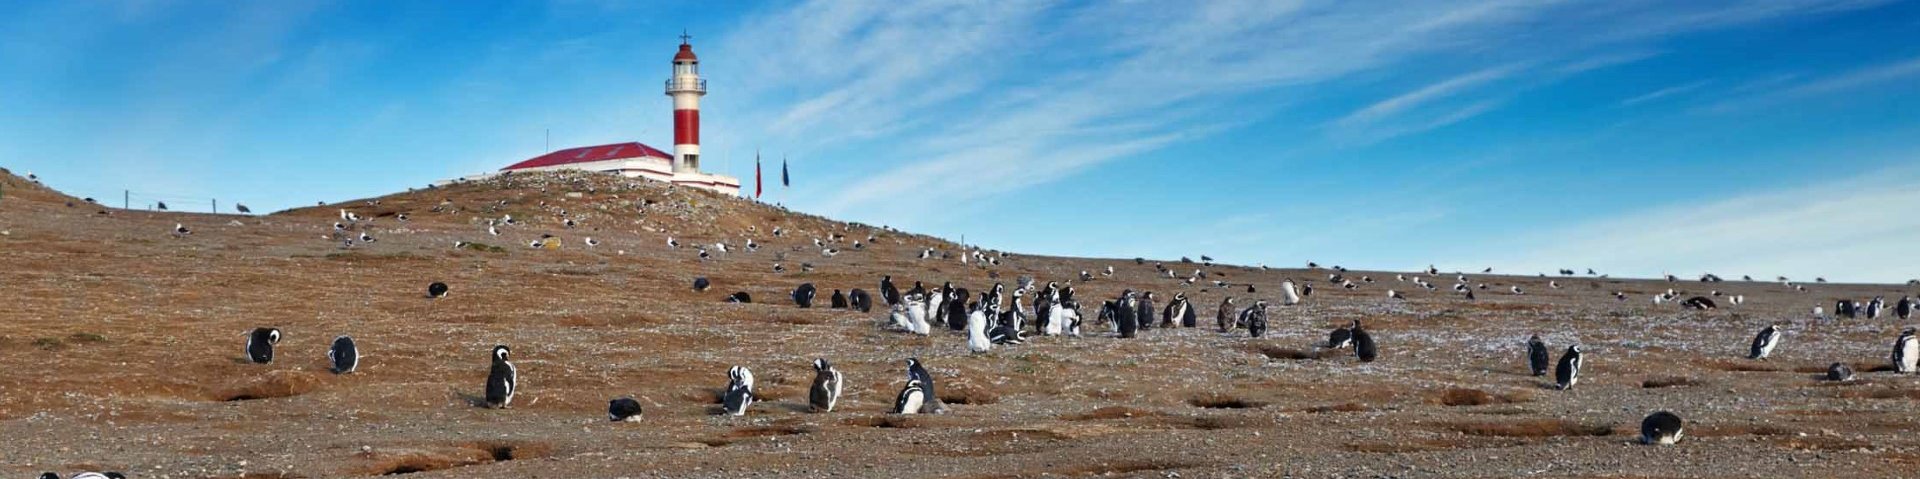 Magellan Pinguine in der Magellanstrasse